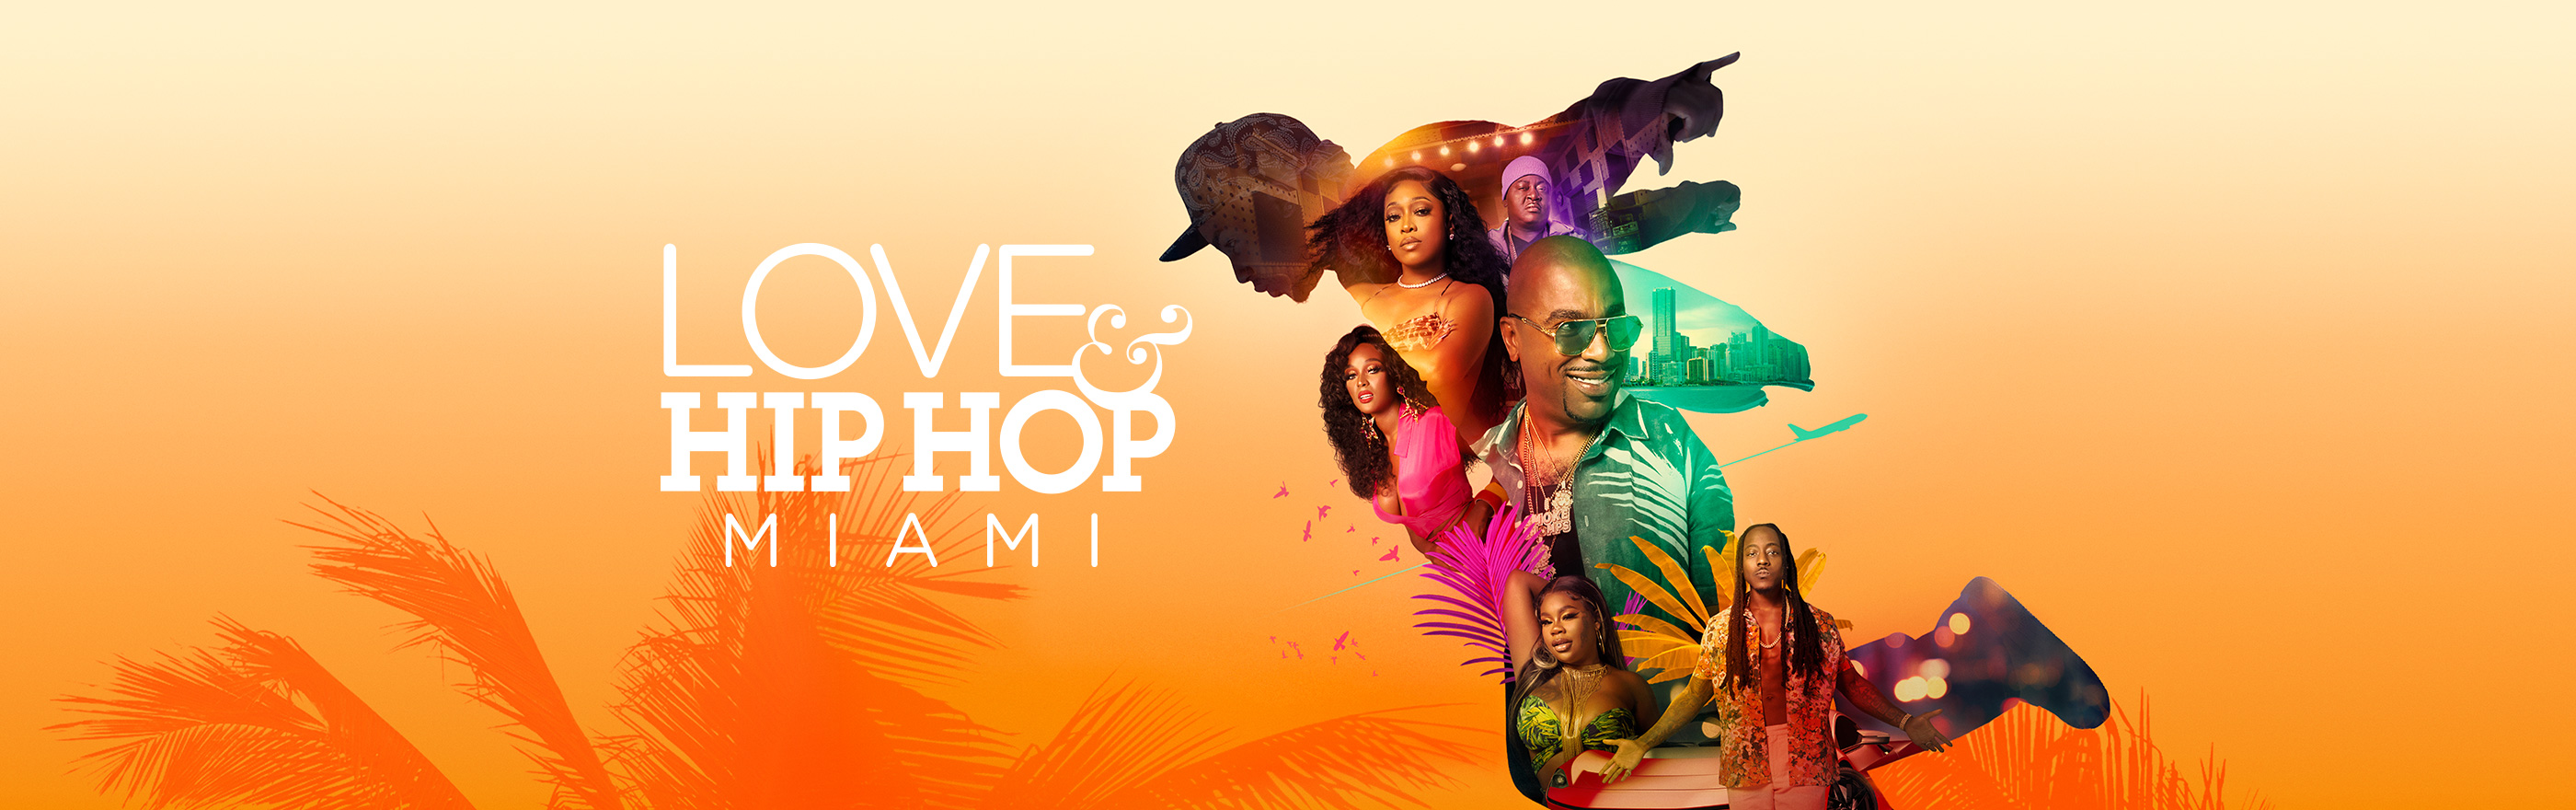 Love & Hip Hop Miami LOGO